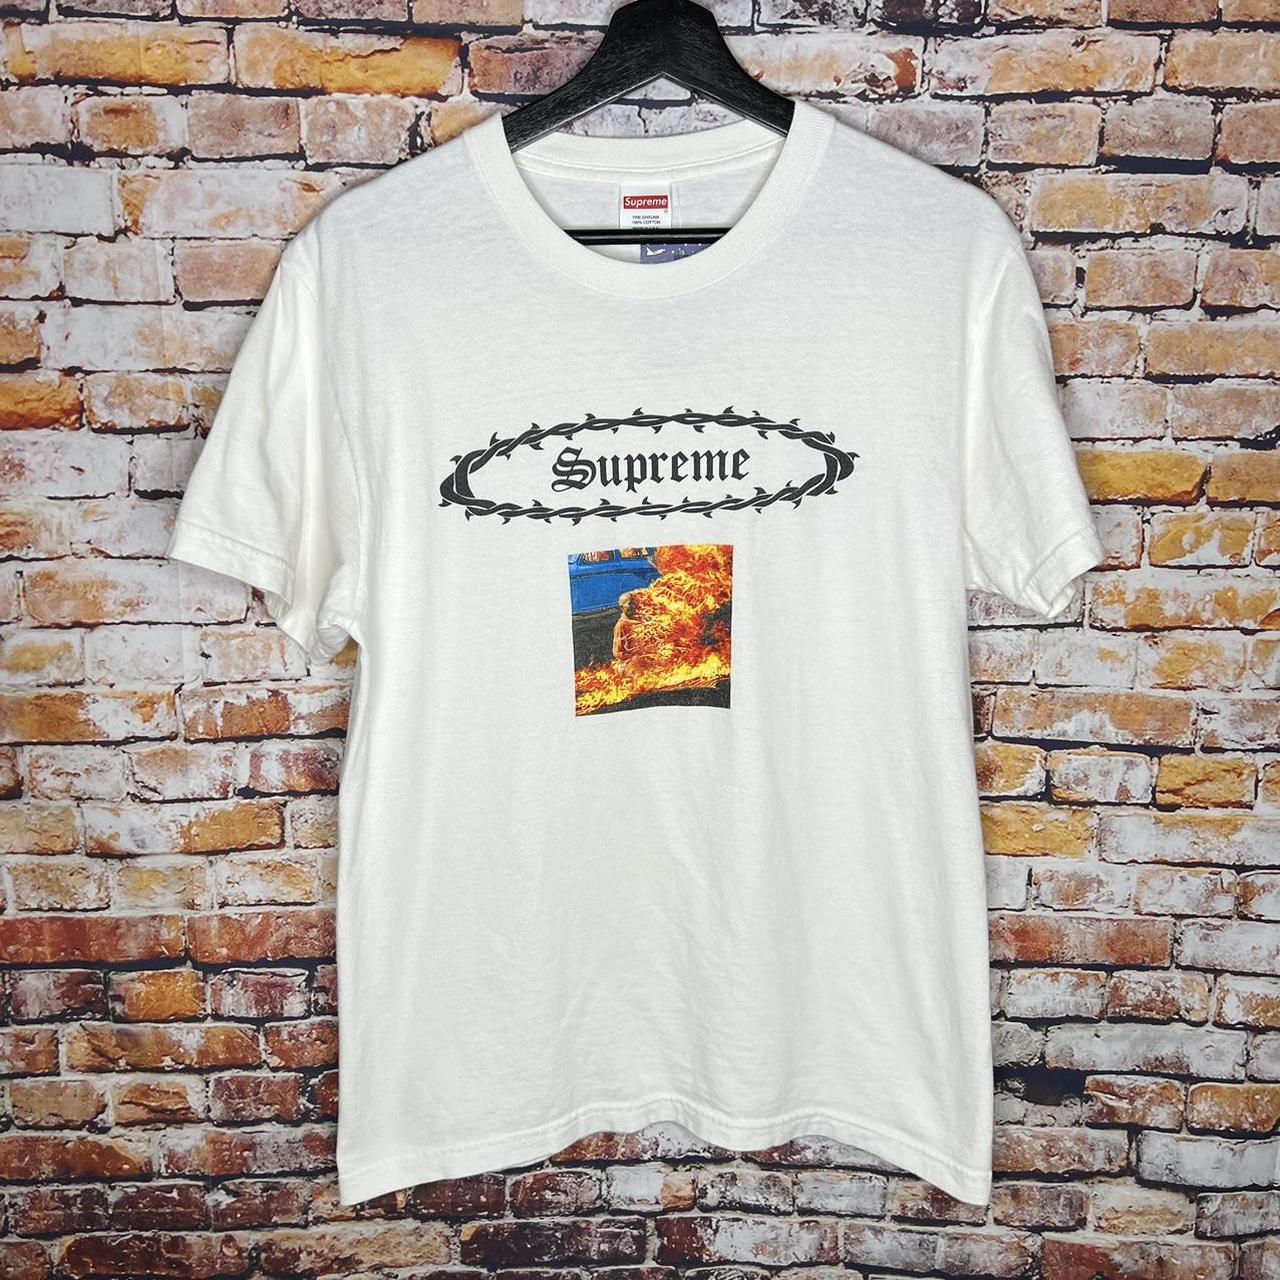 Supreme Eternal T Shirt SS17, Size: M...